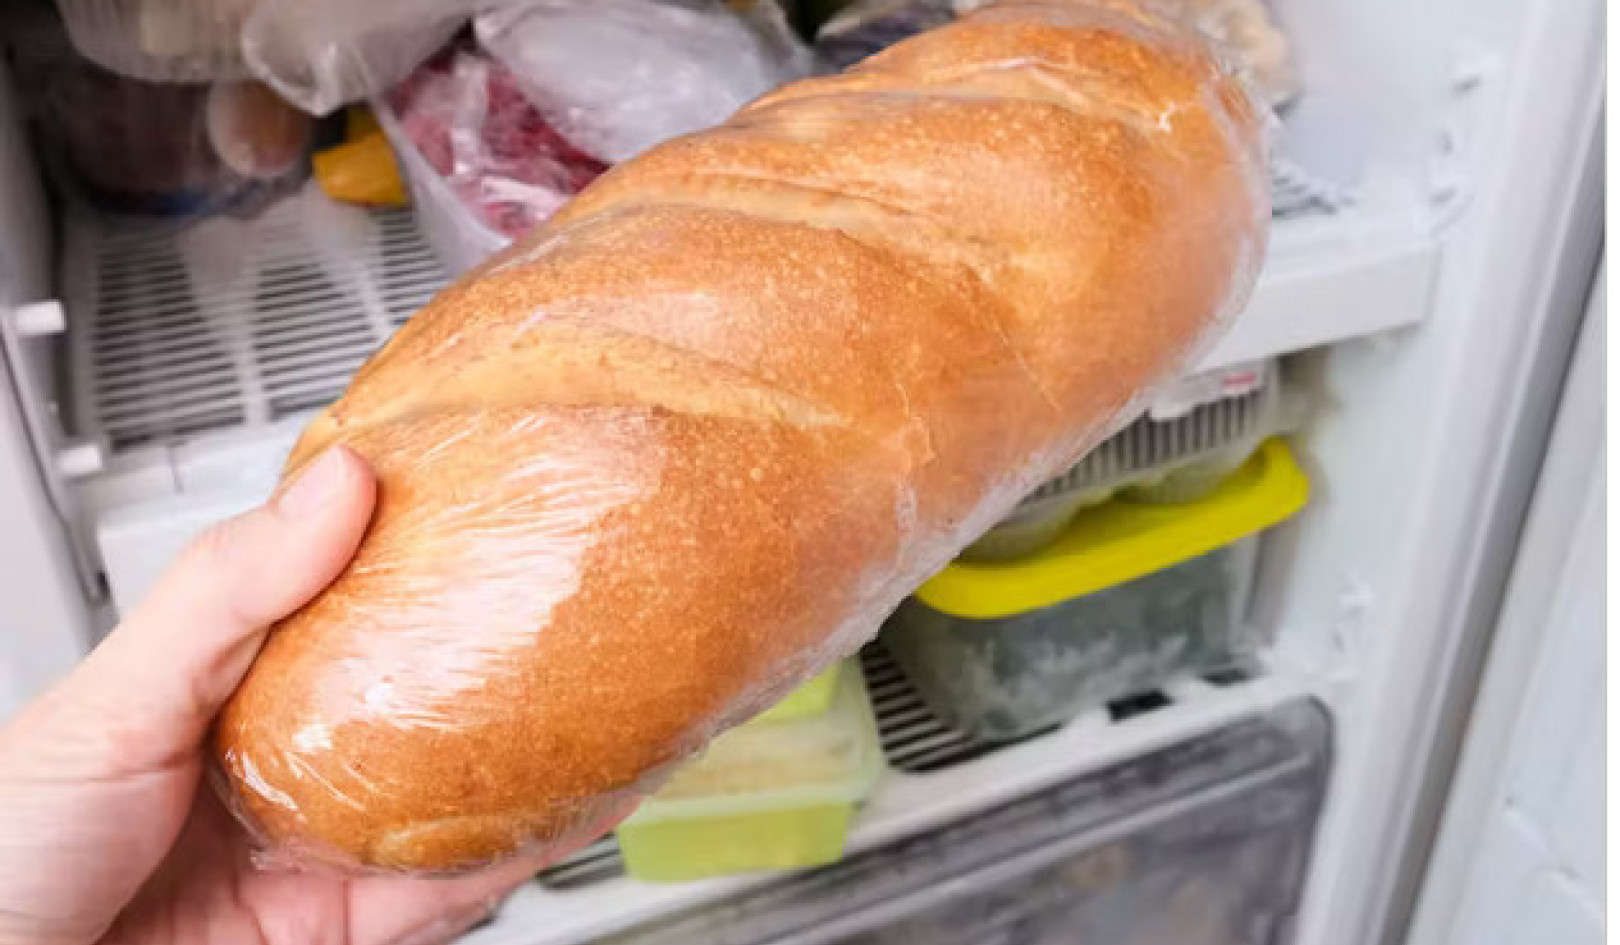 هل تجميد الخبز يجعله أكثر صحة؟ كشفت الحقيقة